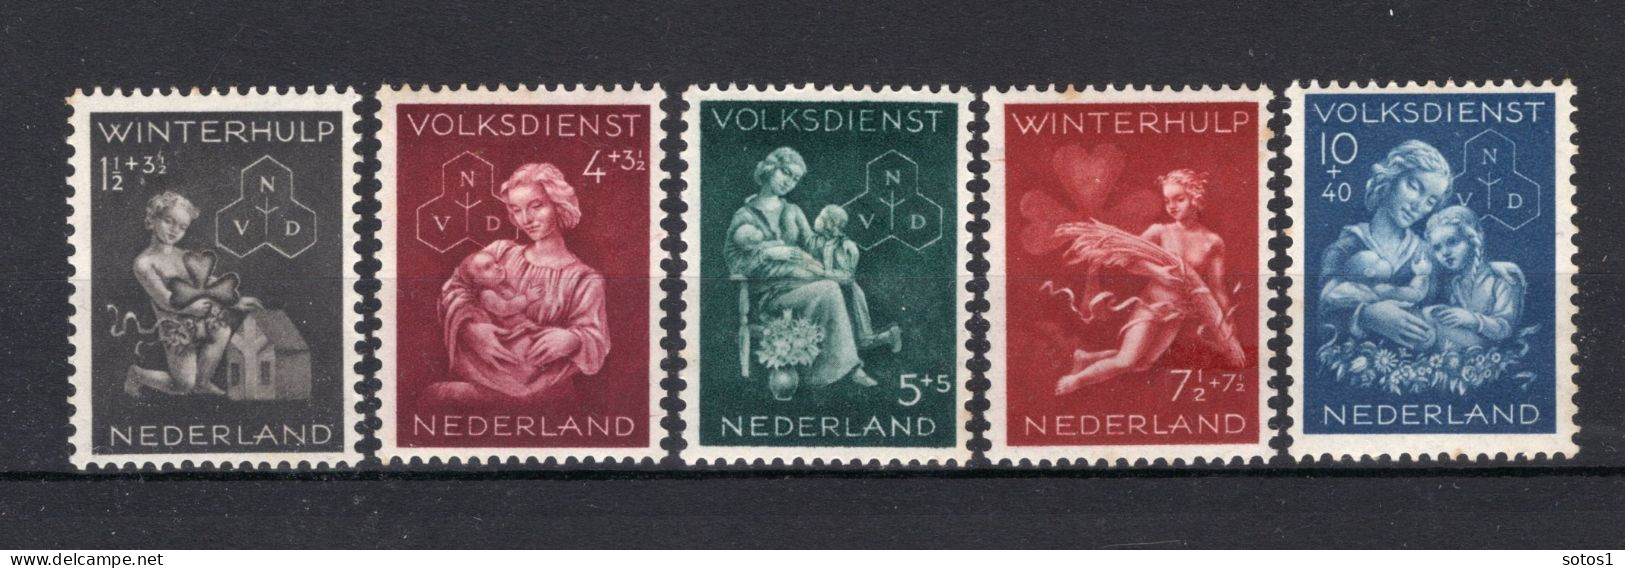 NEDERLAND 423/427 MH 1944 - Winterhulp-Volksdienstzegels -1 - Unused Stamps